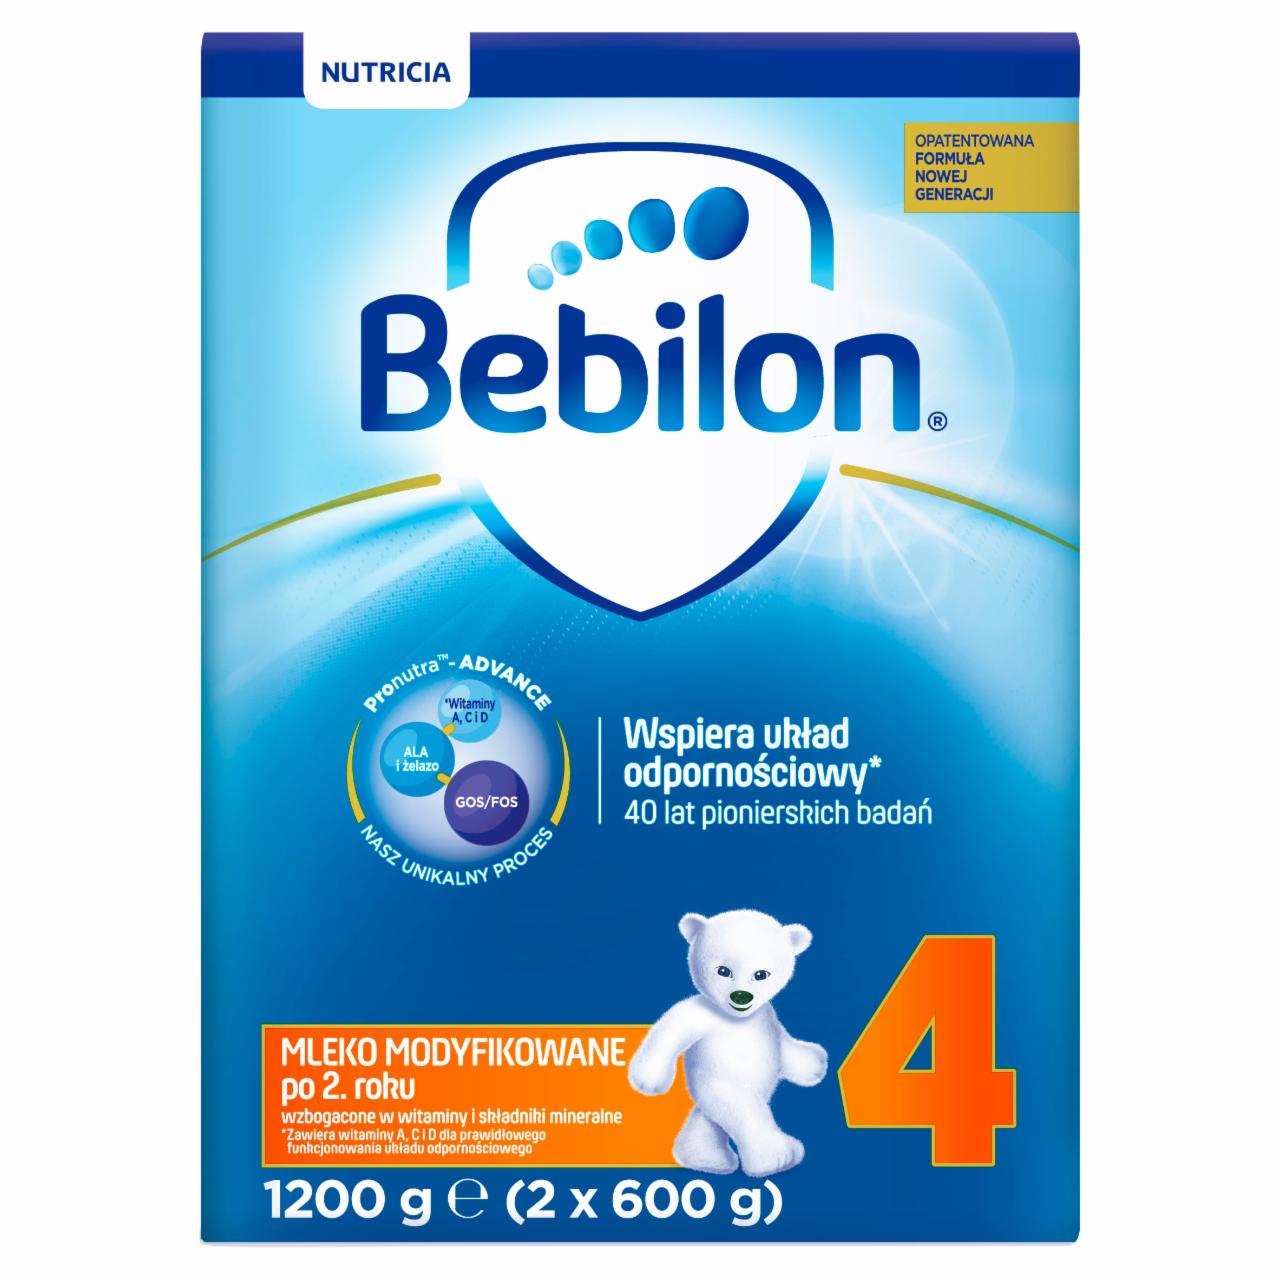 Zdjęcia - Bebilon 4 Pronutra-Advance Mleko modyfikowane po 2. roku 1200 g (2 x 600 g)